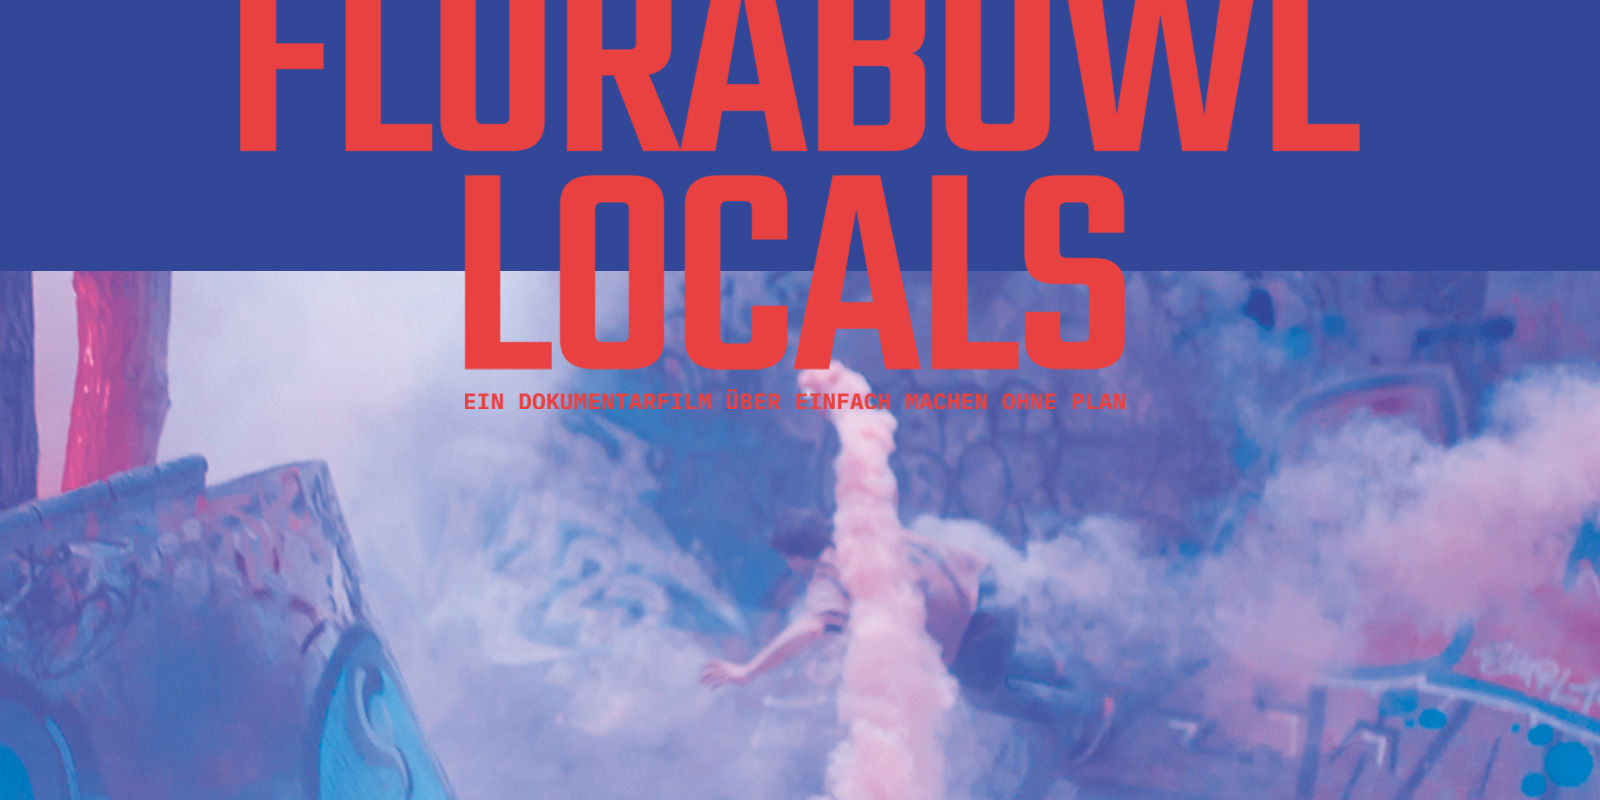 Florabowl Locals – Tour & Film